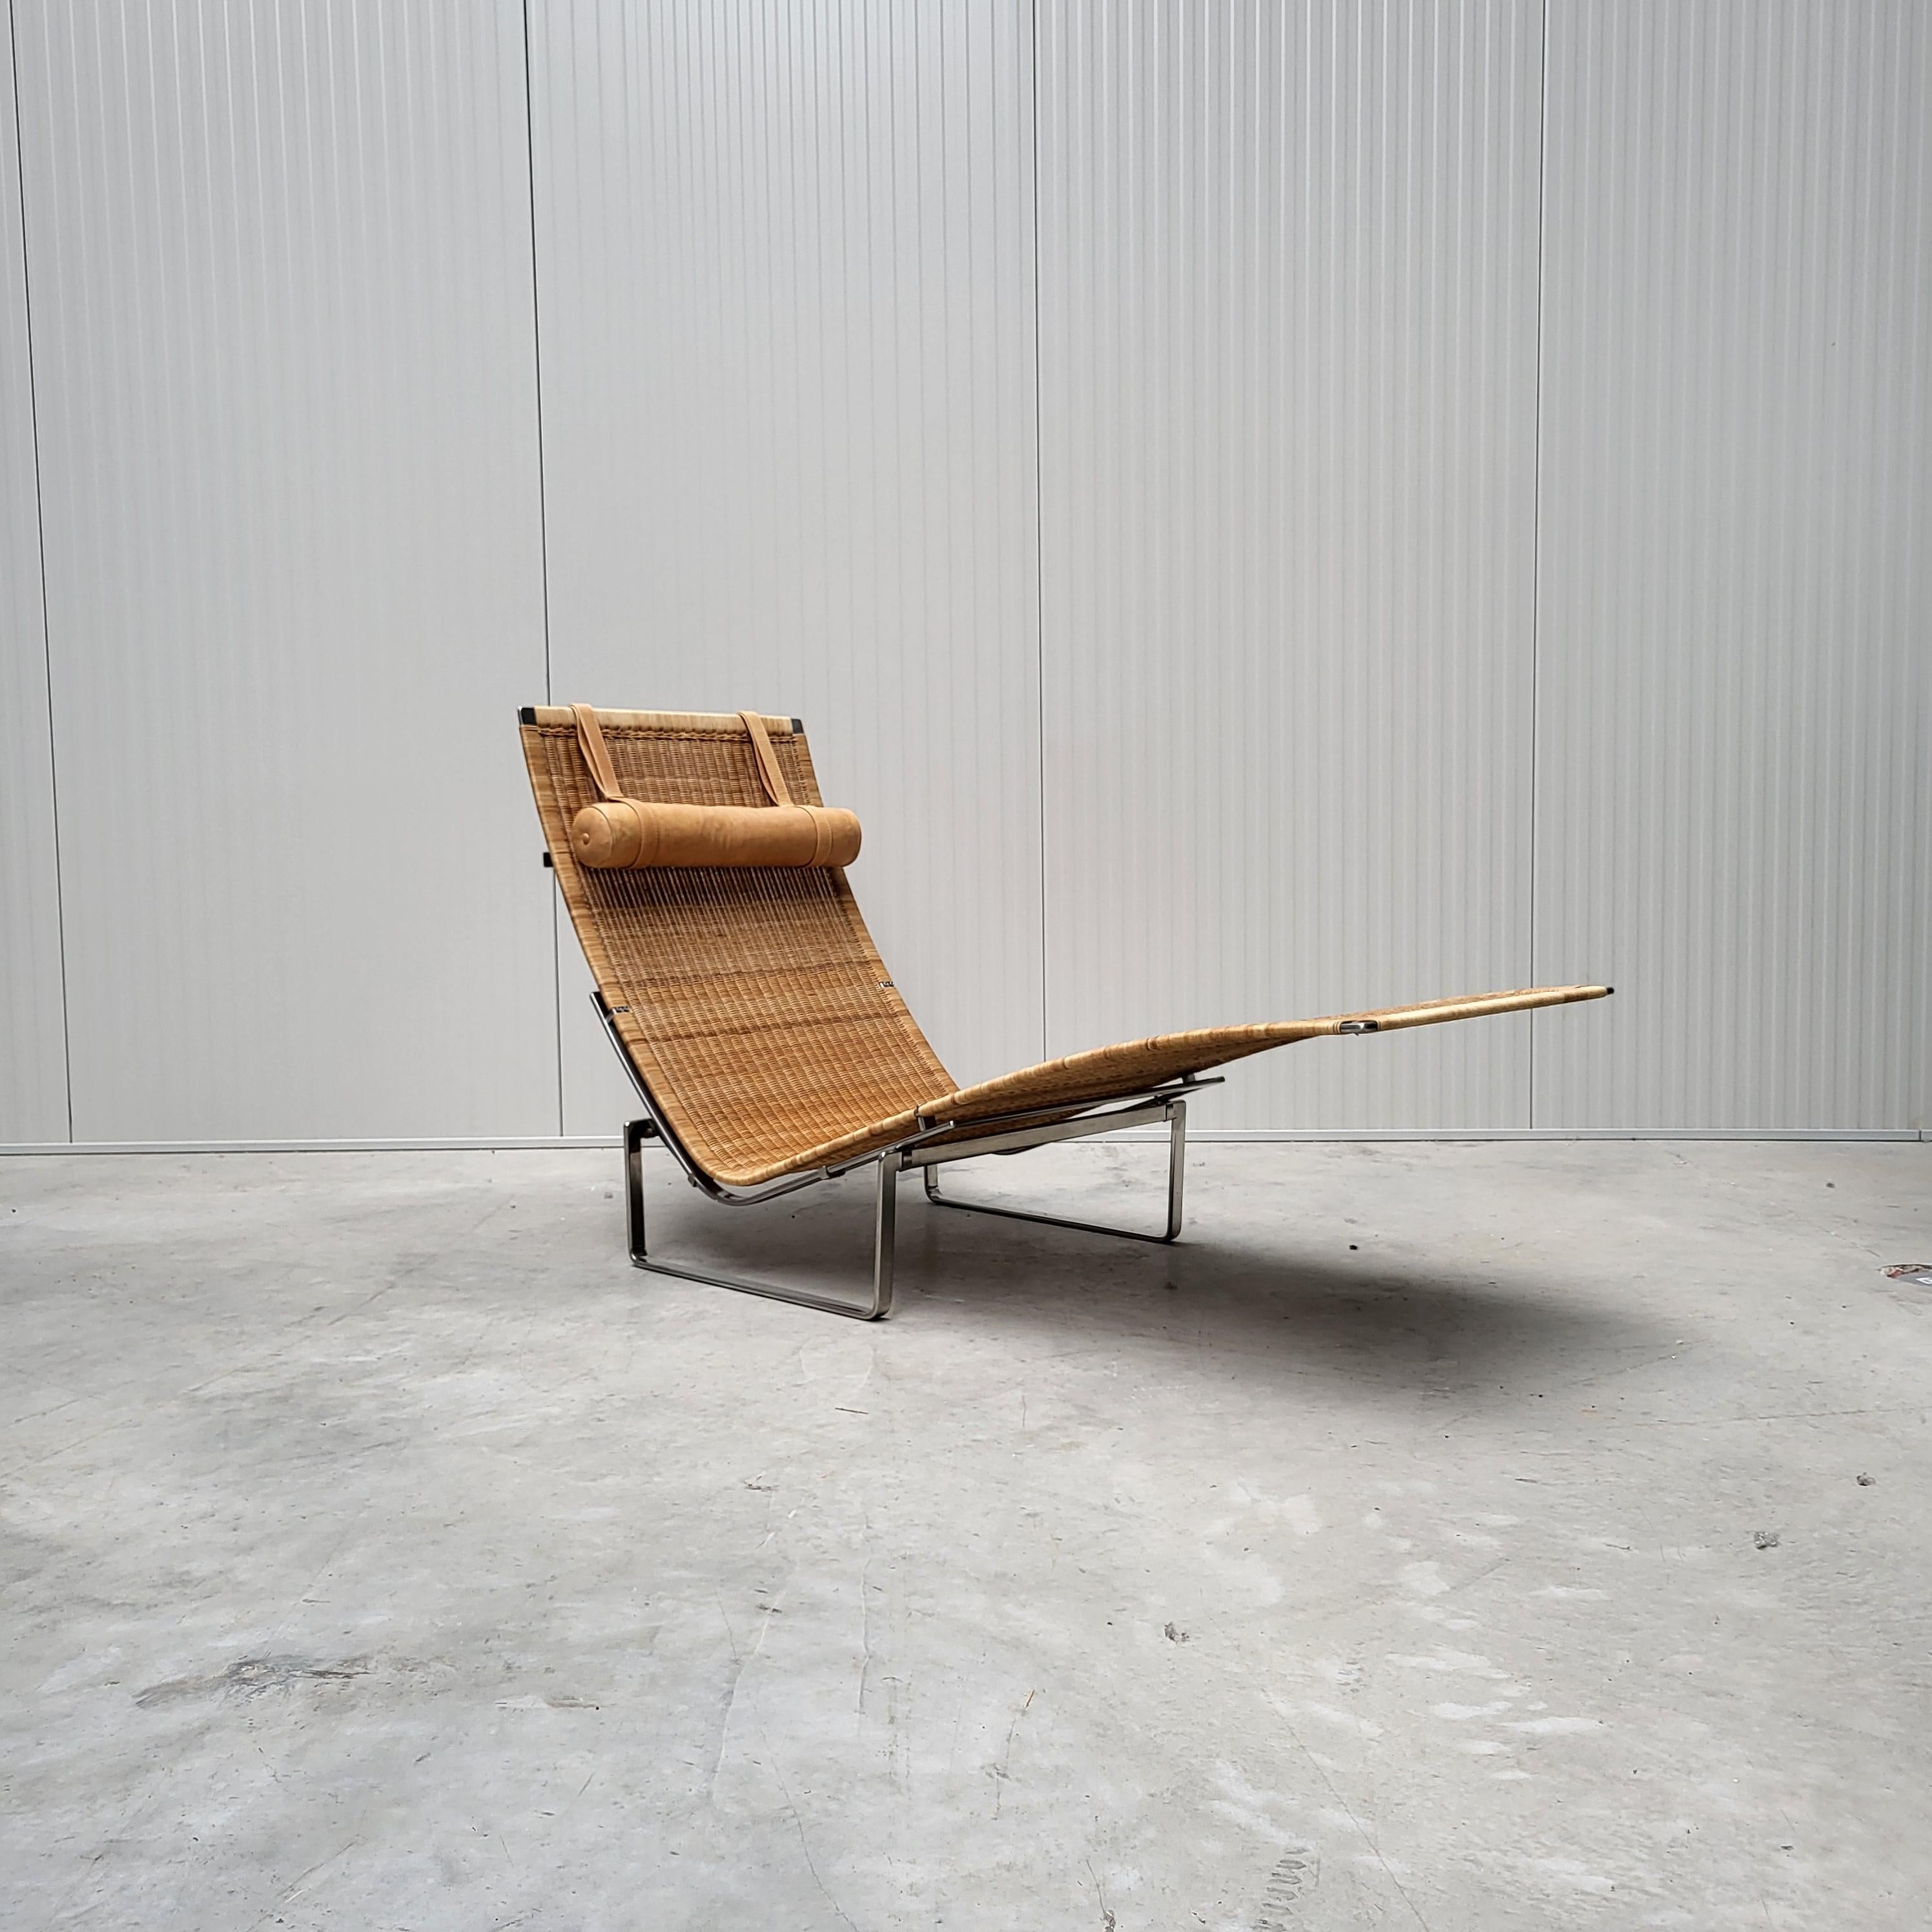 Ce magnifique exemple de chaise longue en osier PK24 a été conçu par Poul Kjaerholm dans les années 1960 et a été produit par Fritz Hansen au Danemark en 2001.

La chaise est dotée d'un cadre en acier poli et d'un revêtement en osier, tous deux en